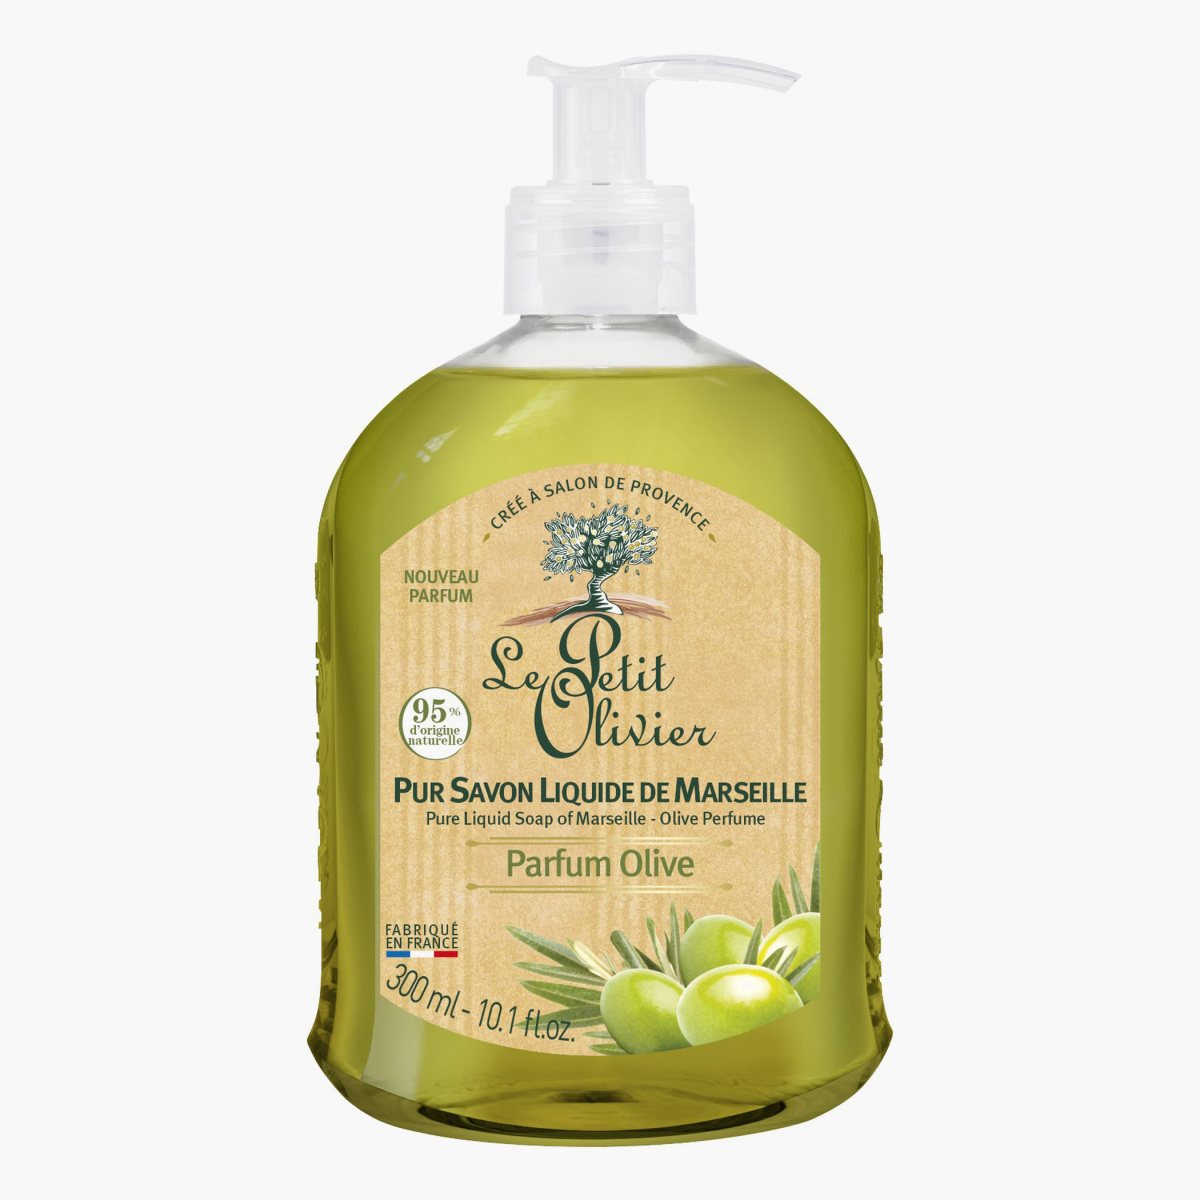 Le Petit Olivier Olive Perfume Pure Liquid Soap of Marseille - 300 ml